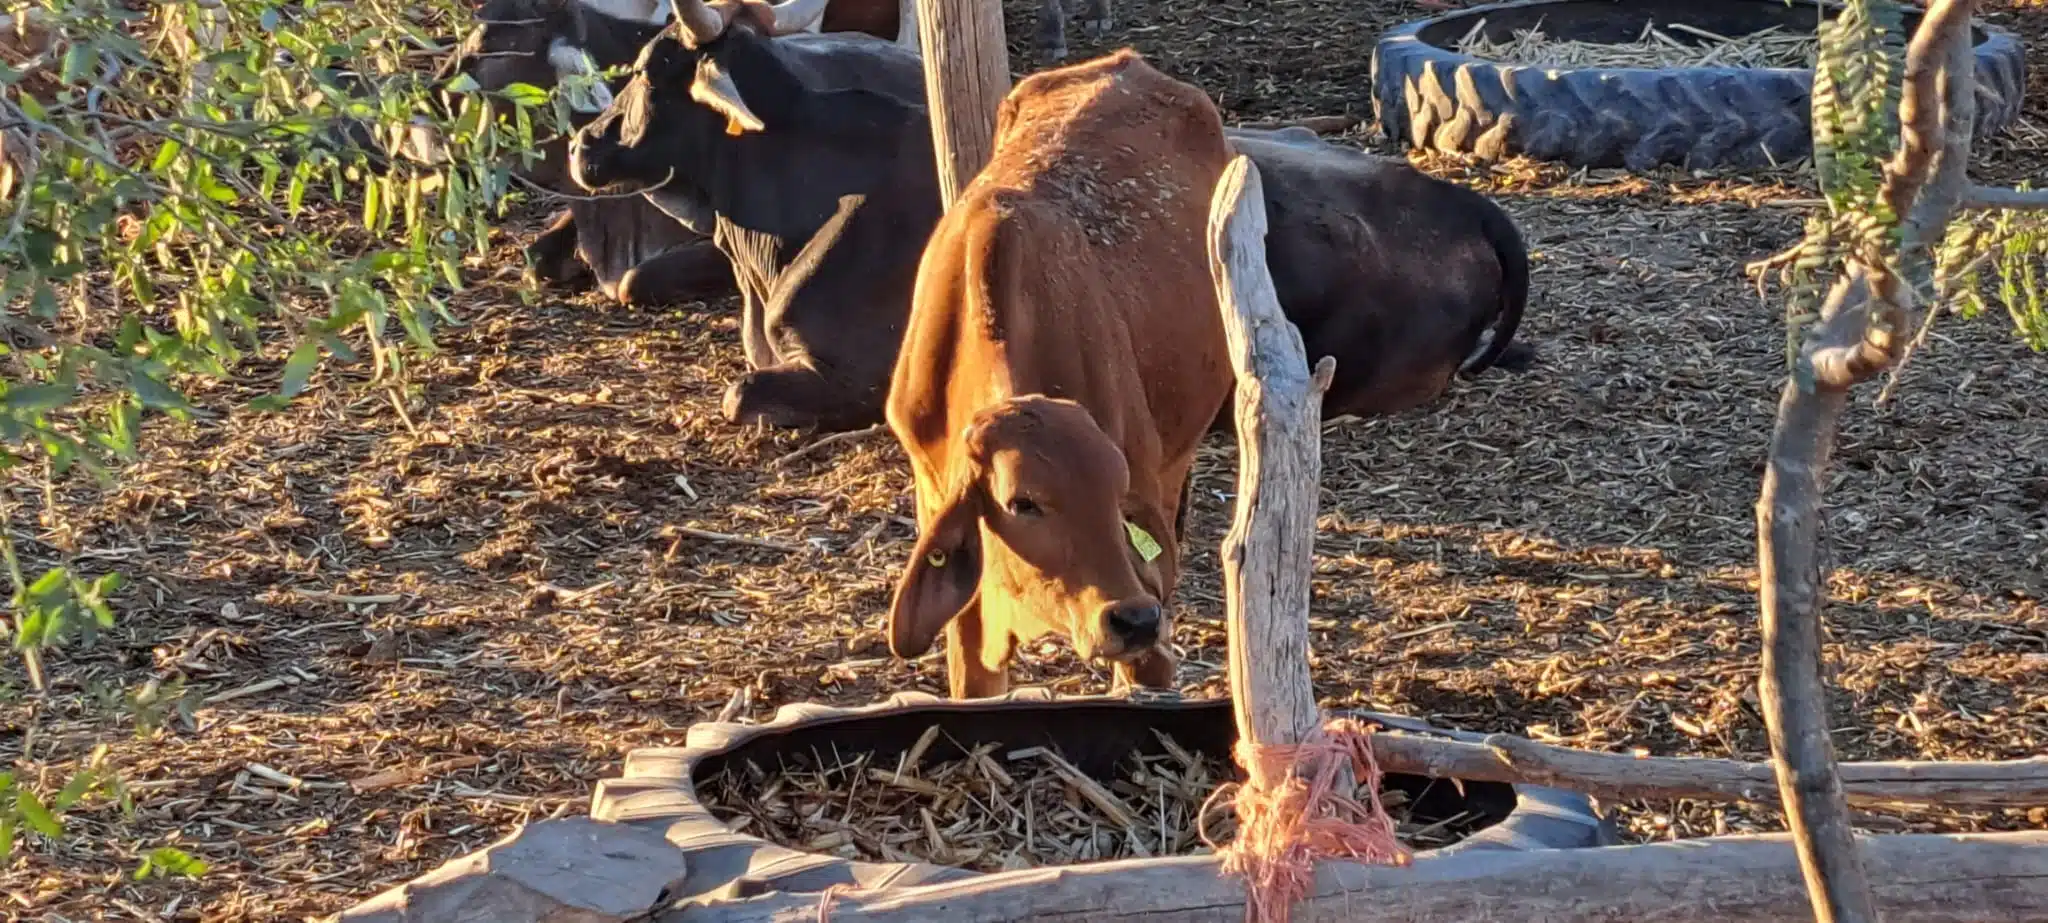 Según la Asociación de Ganaderos no hay reportes de muertes de ganado